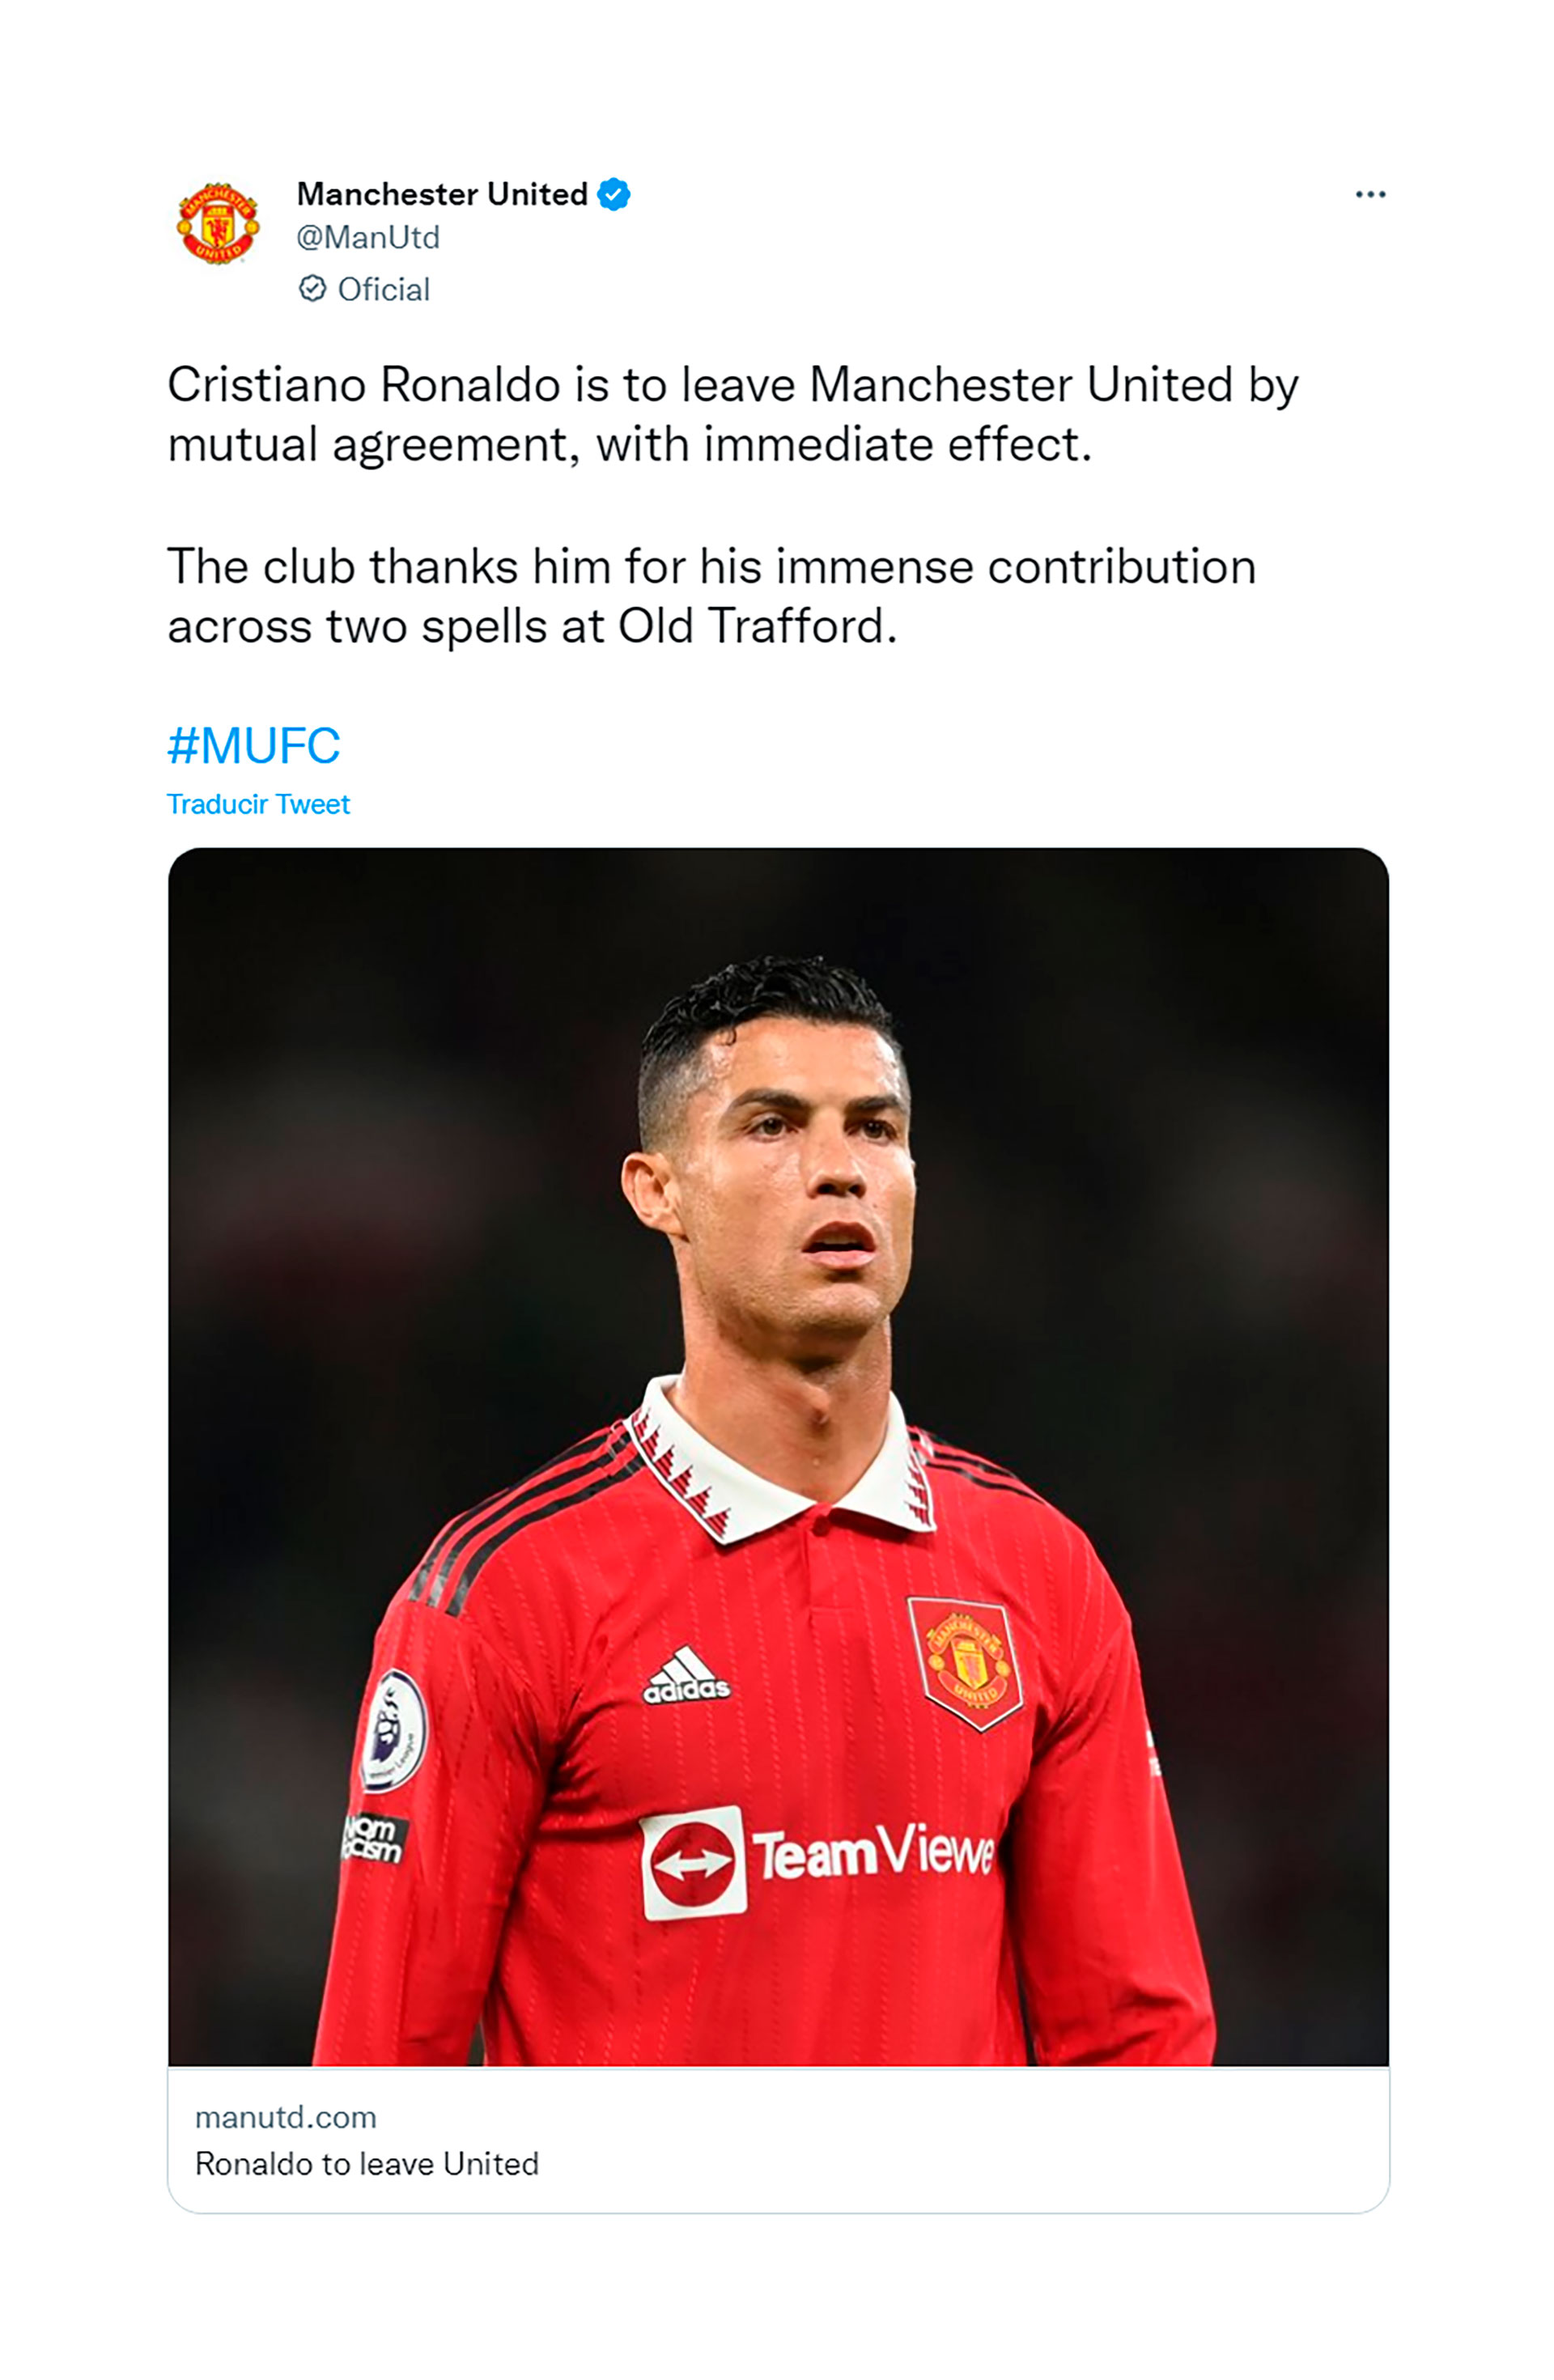 El comunicado del Manchester United para anunciar la salida de Cristiano Ronaldo